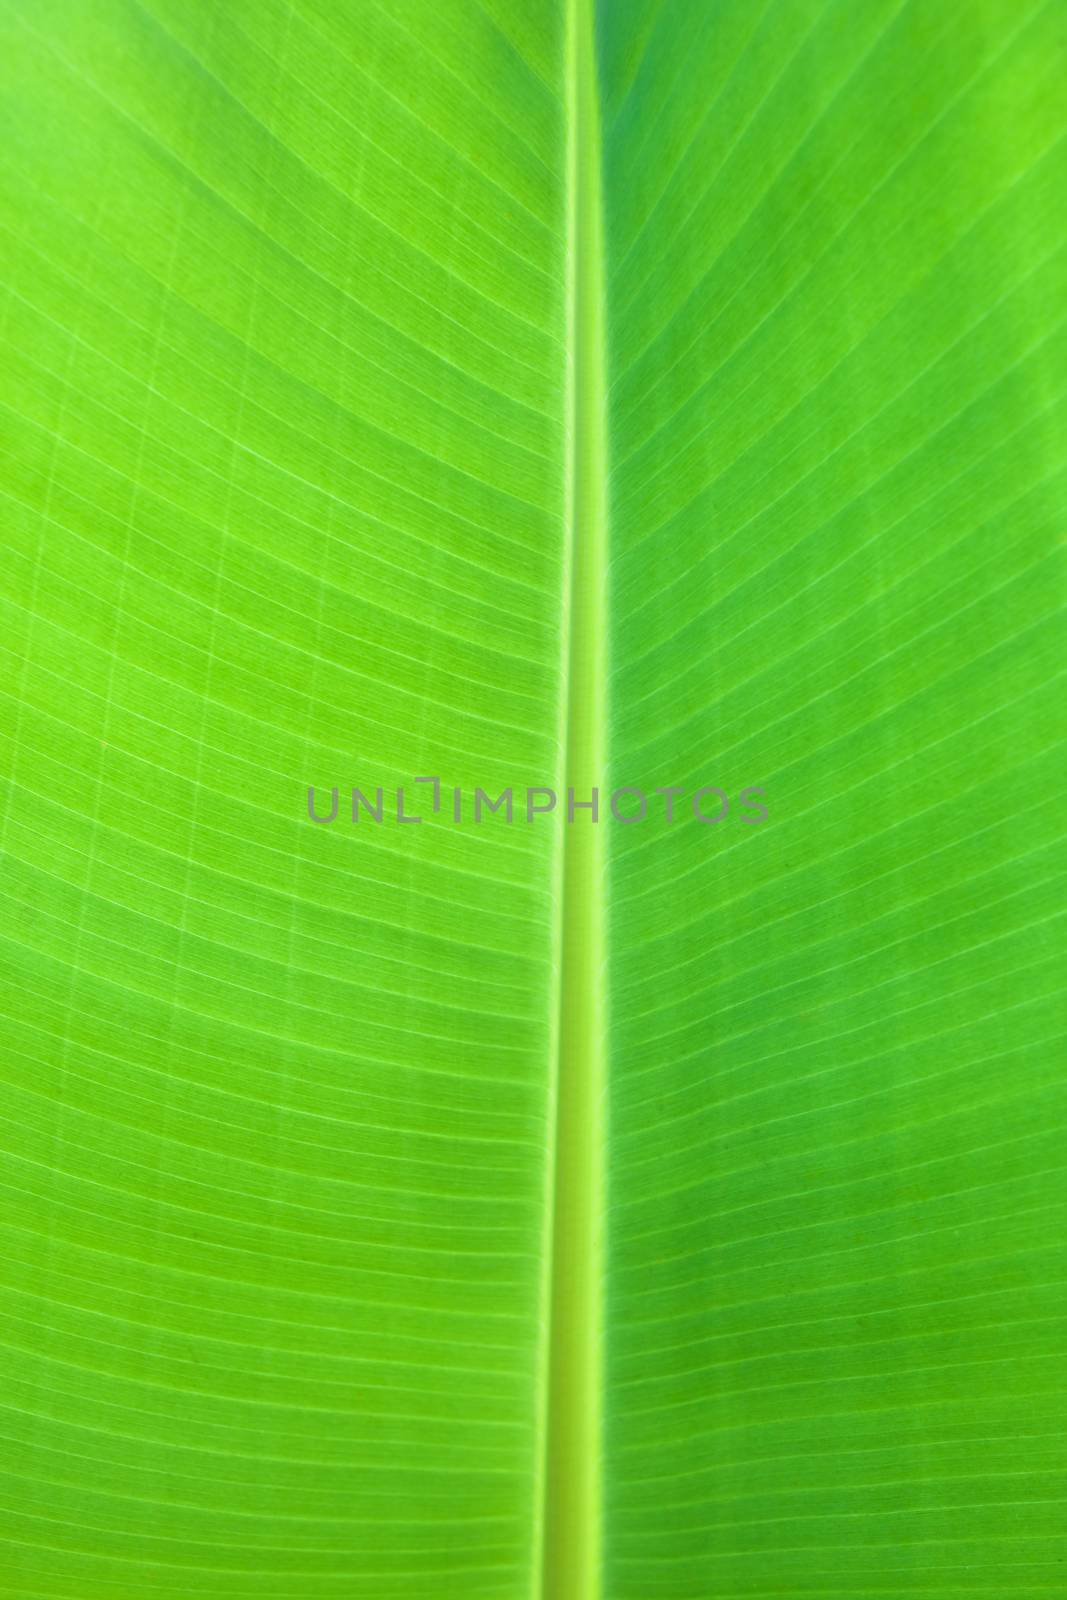 banana leaf by antpkr